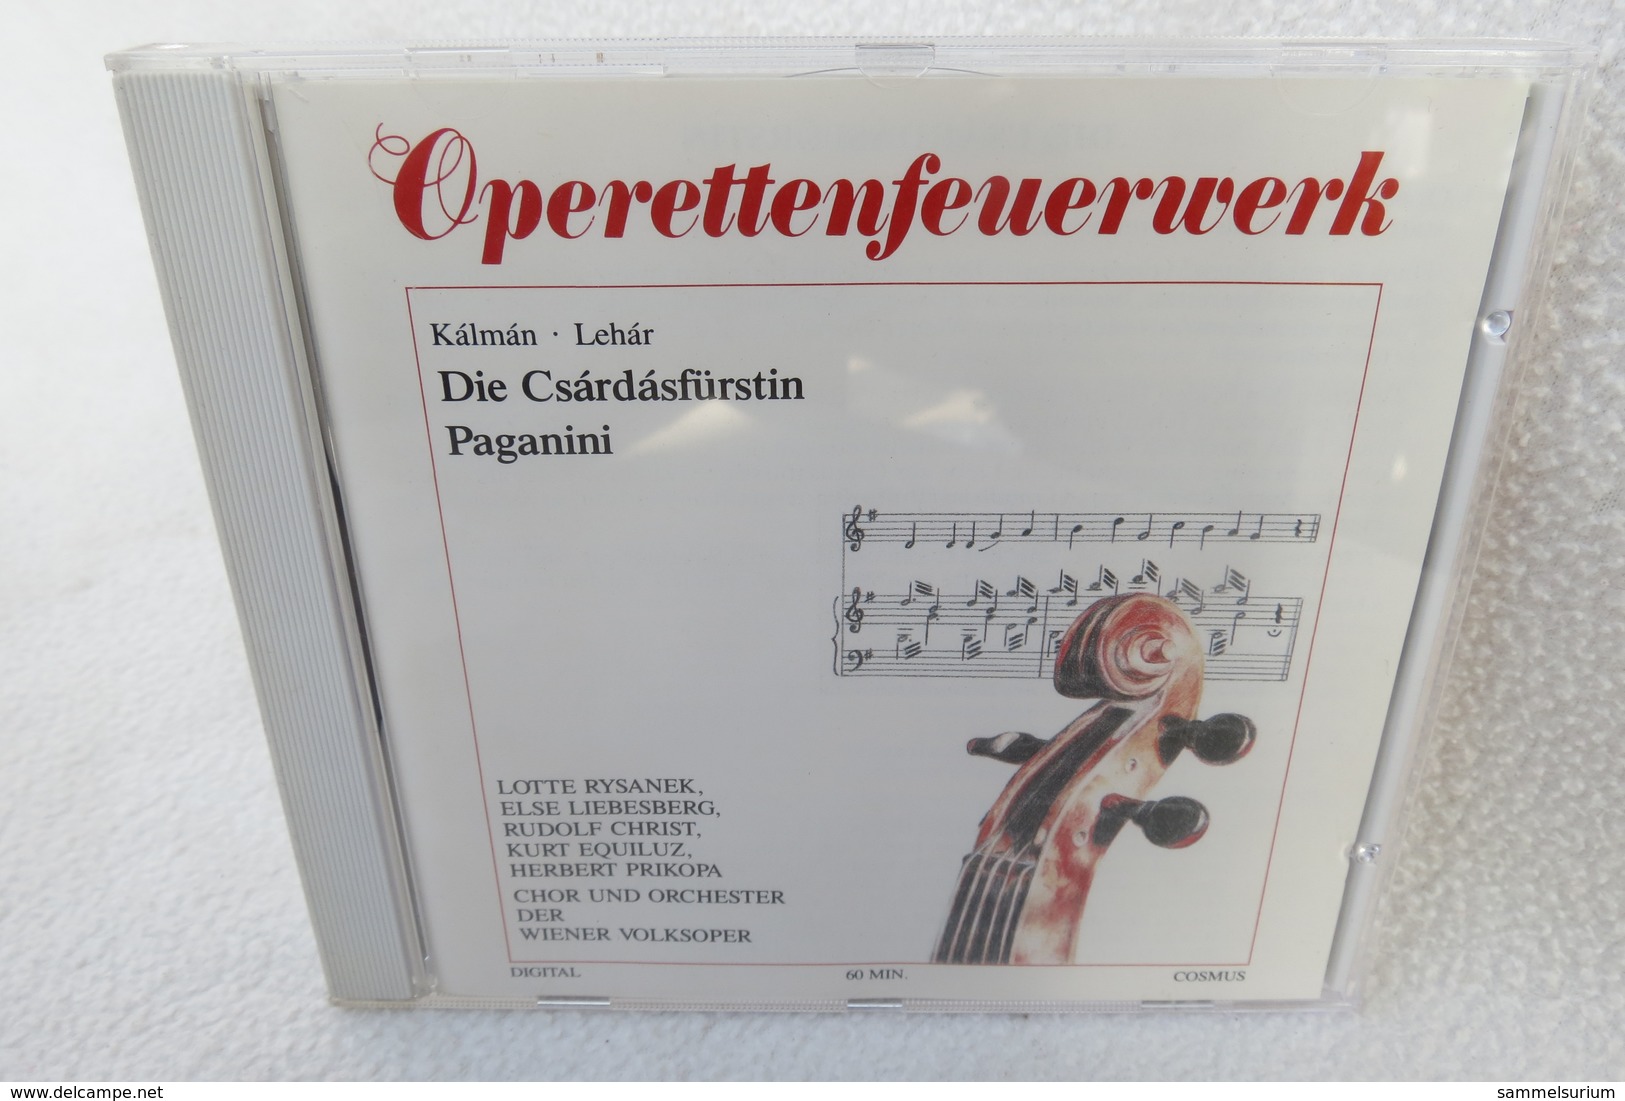 CD "Operettenfeuerwerk" Kálmán, Lehár - Opera